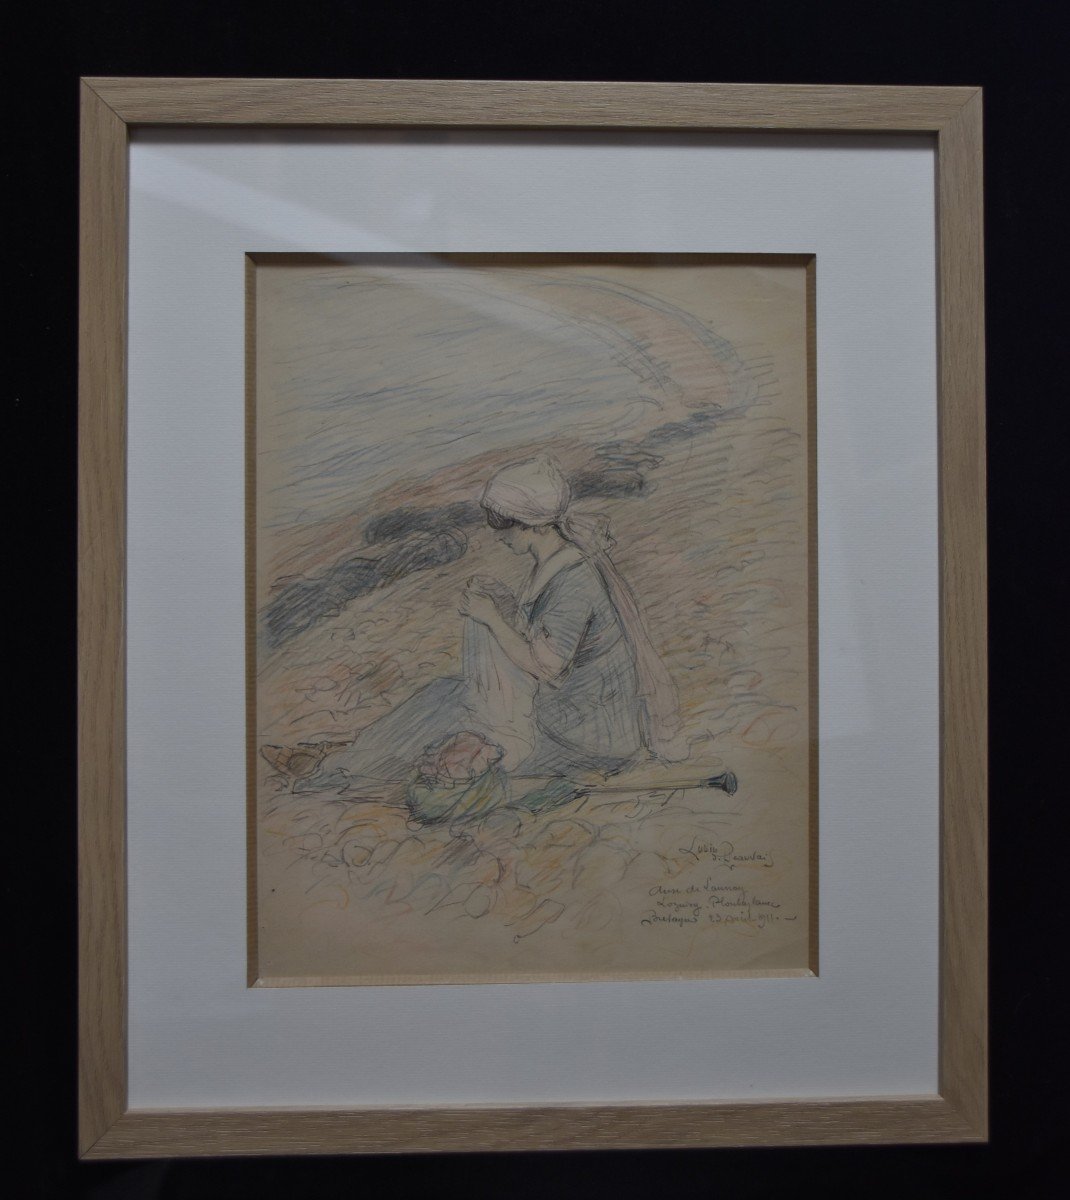 Lubin de Beauvais (1873-1917) L'Anse de Launay 1911, dessin signé -photo-2